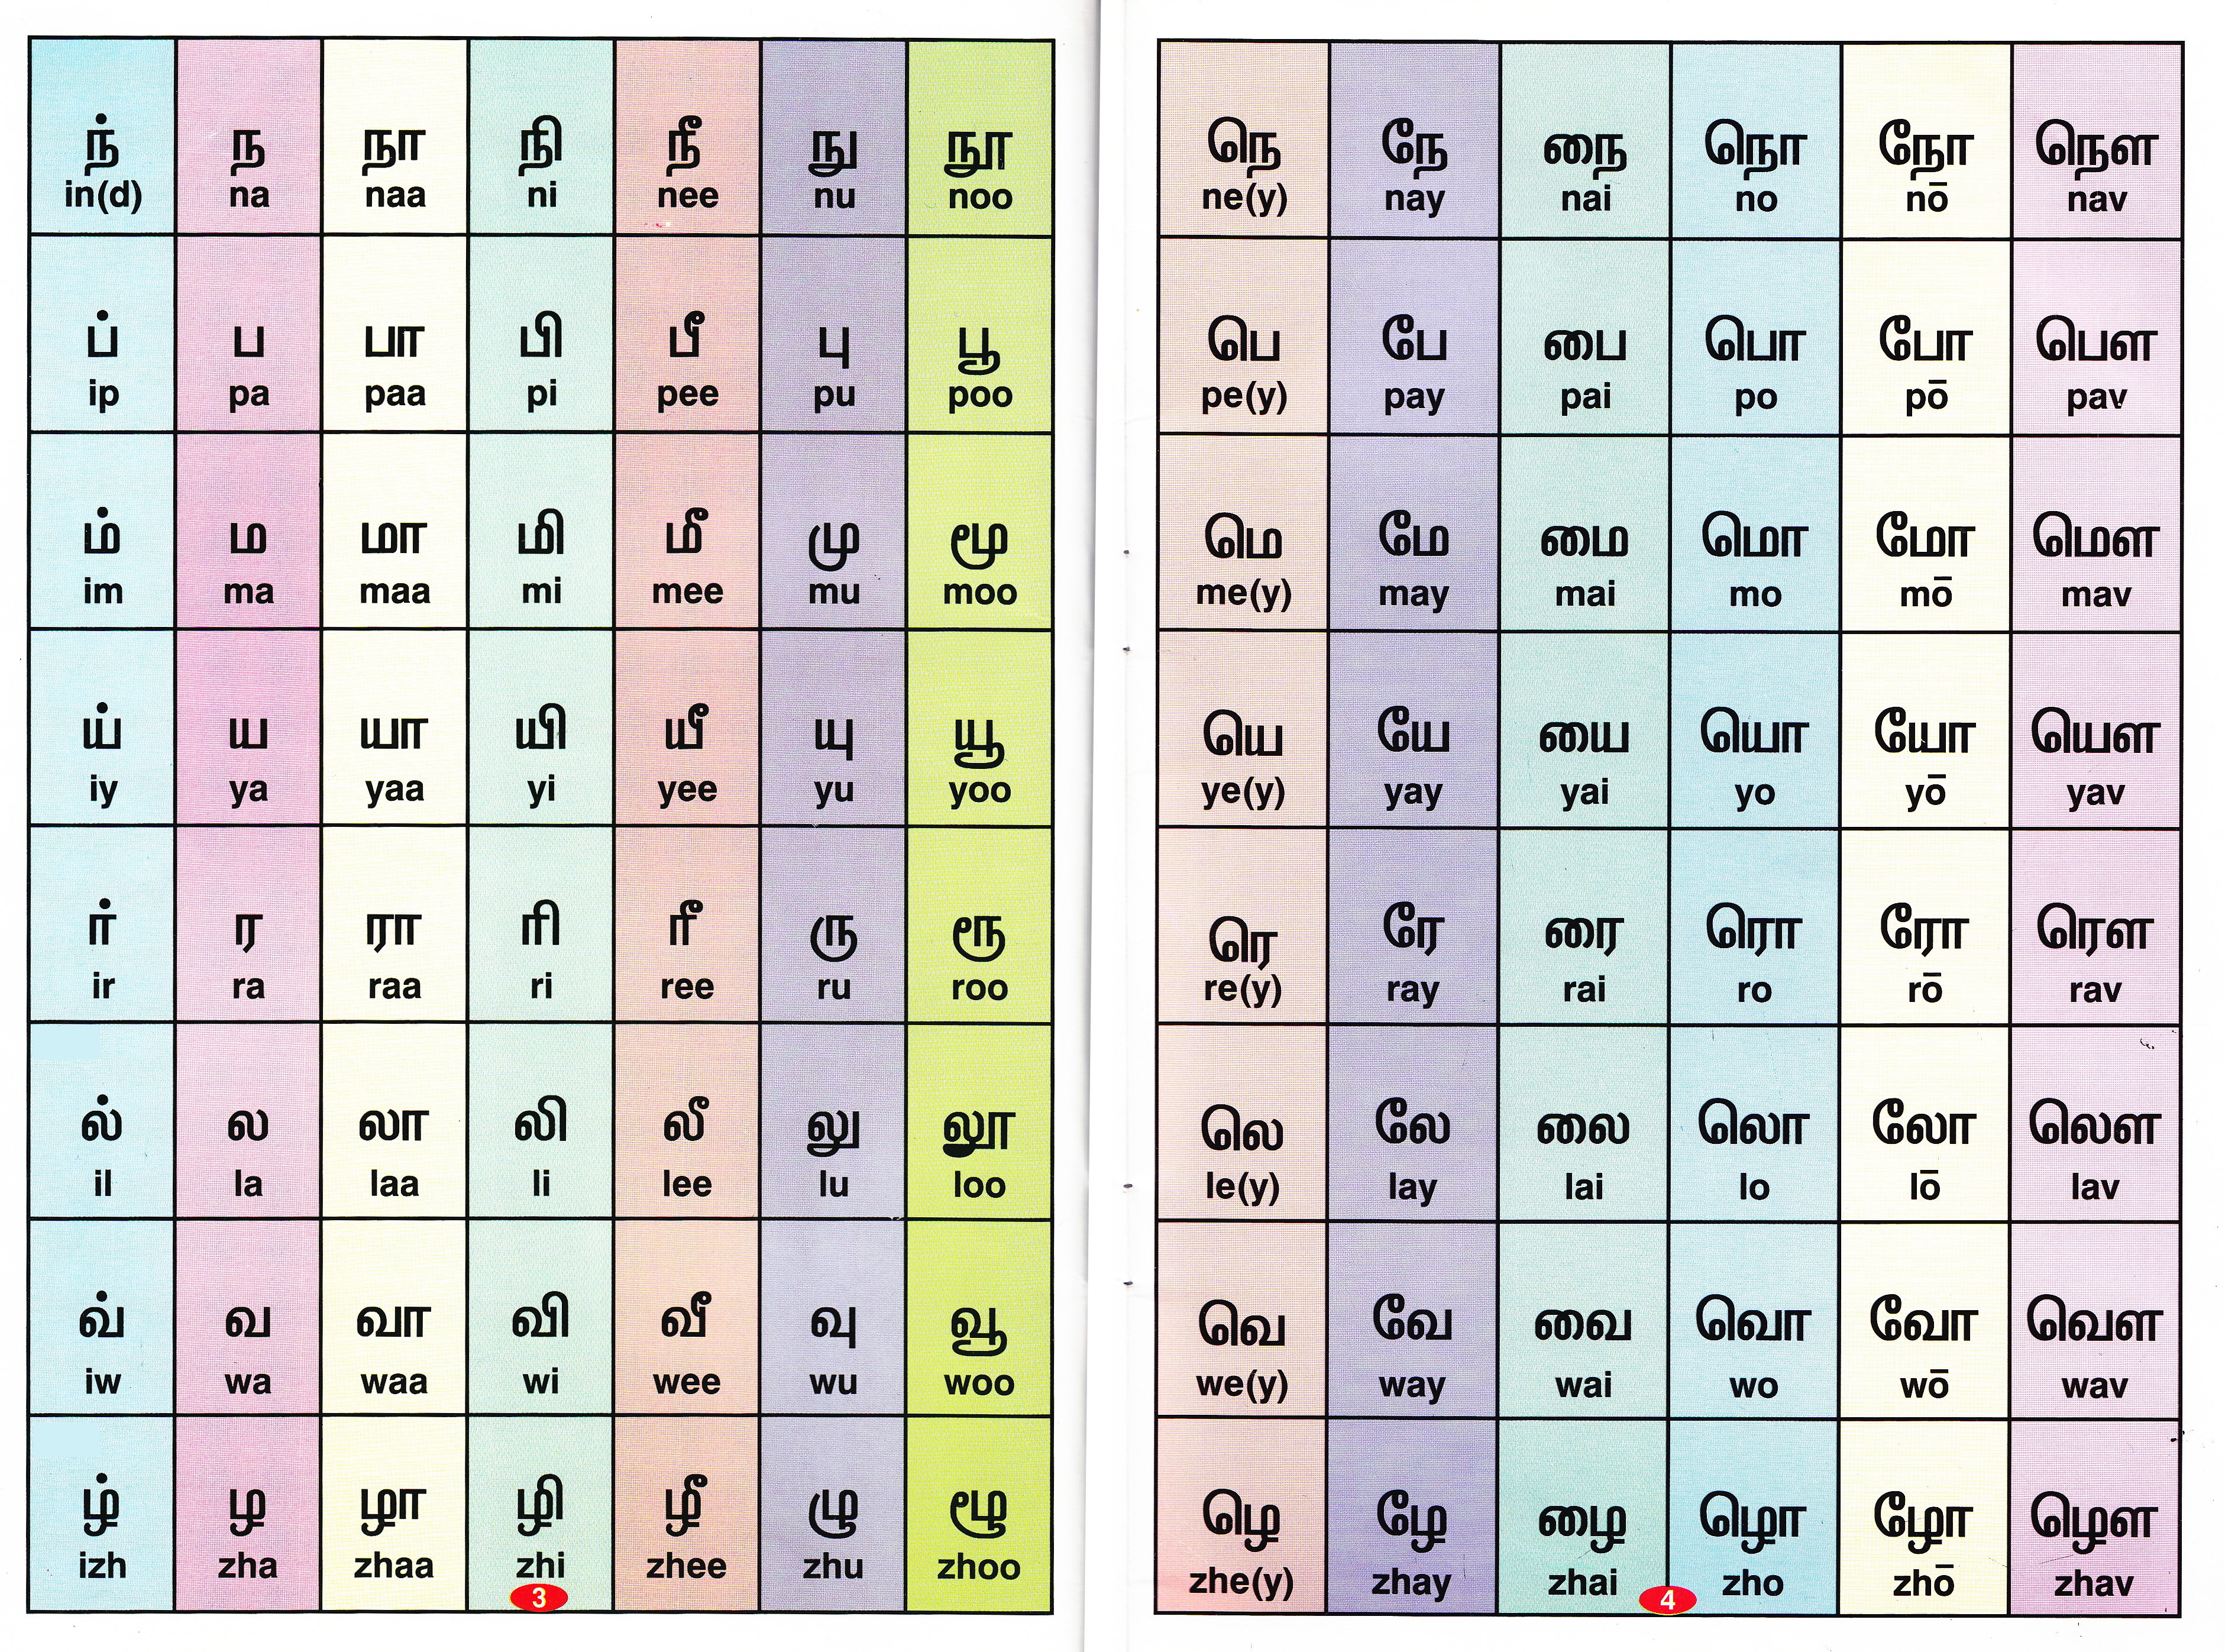 Tamil Verb Conjugation Chart